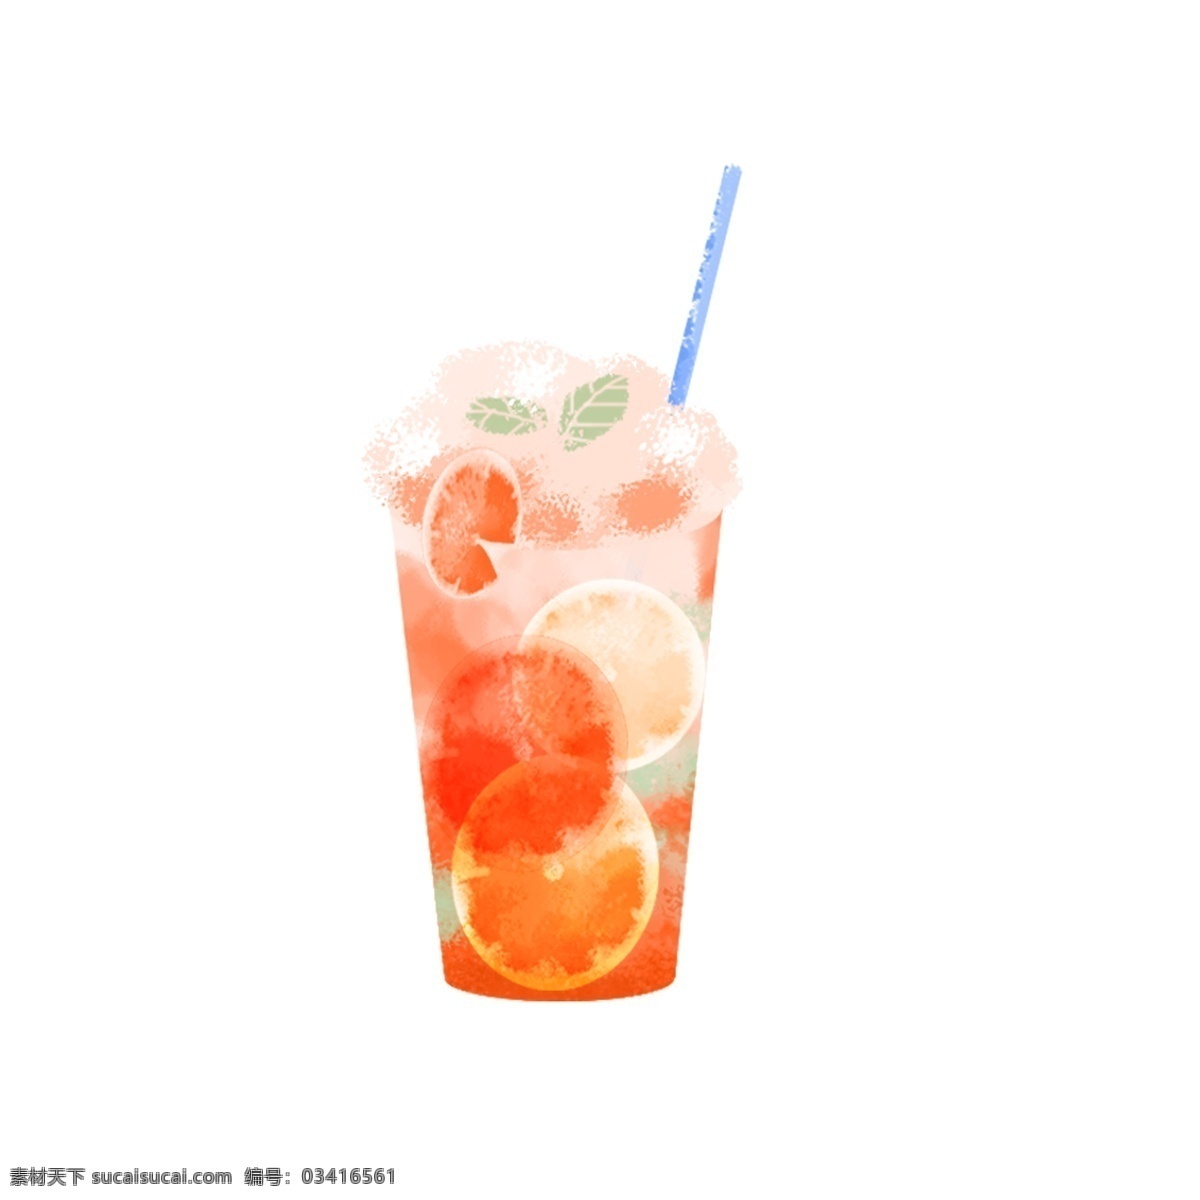 透明 图 层 手绘 饮品 饮料 水果 夏天 清凉